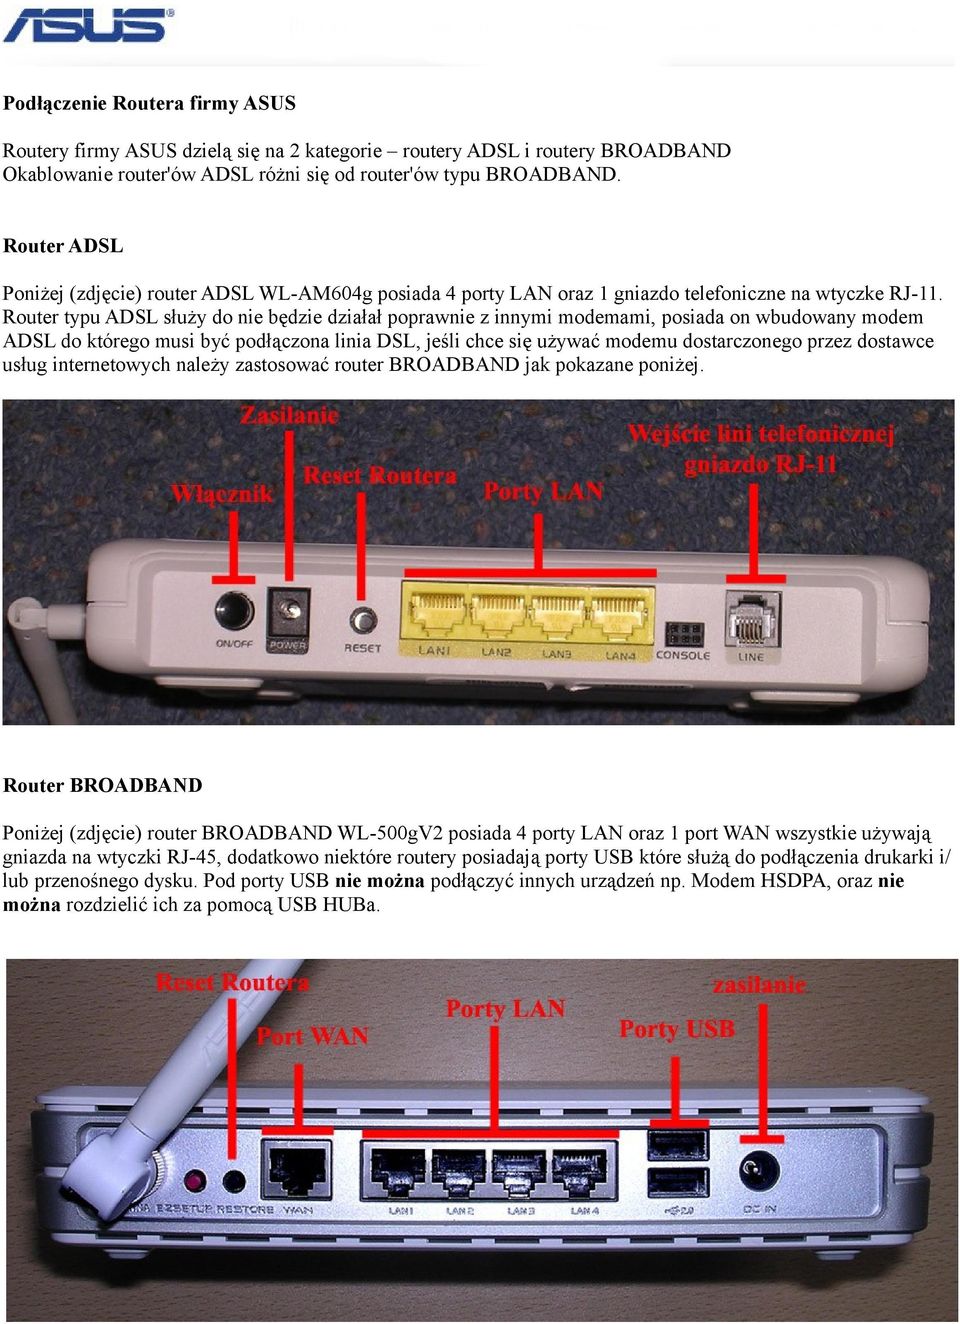 Router typu ADSL służy do nie będzie działał poprawnie z innymi modemami, posiada on wbudowany modem ADSL do którego musi być podłączona linia DSL, jeśli chce się używać modemu dostarczonego przez